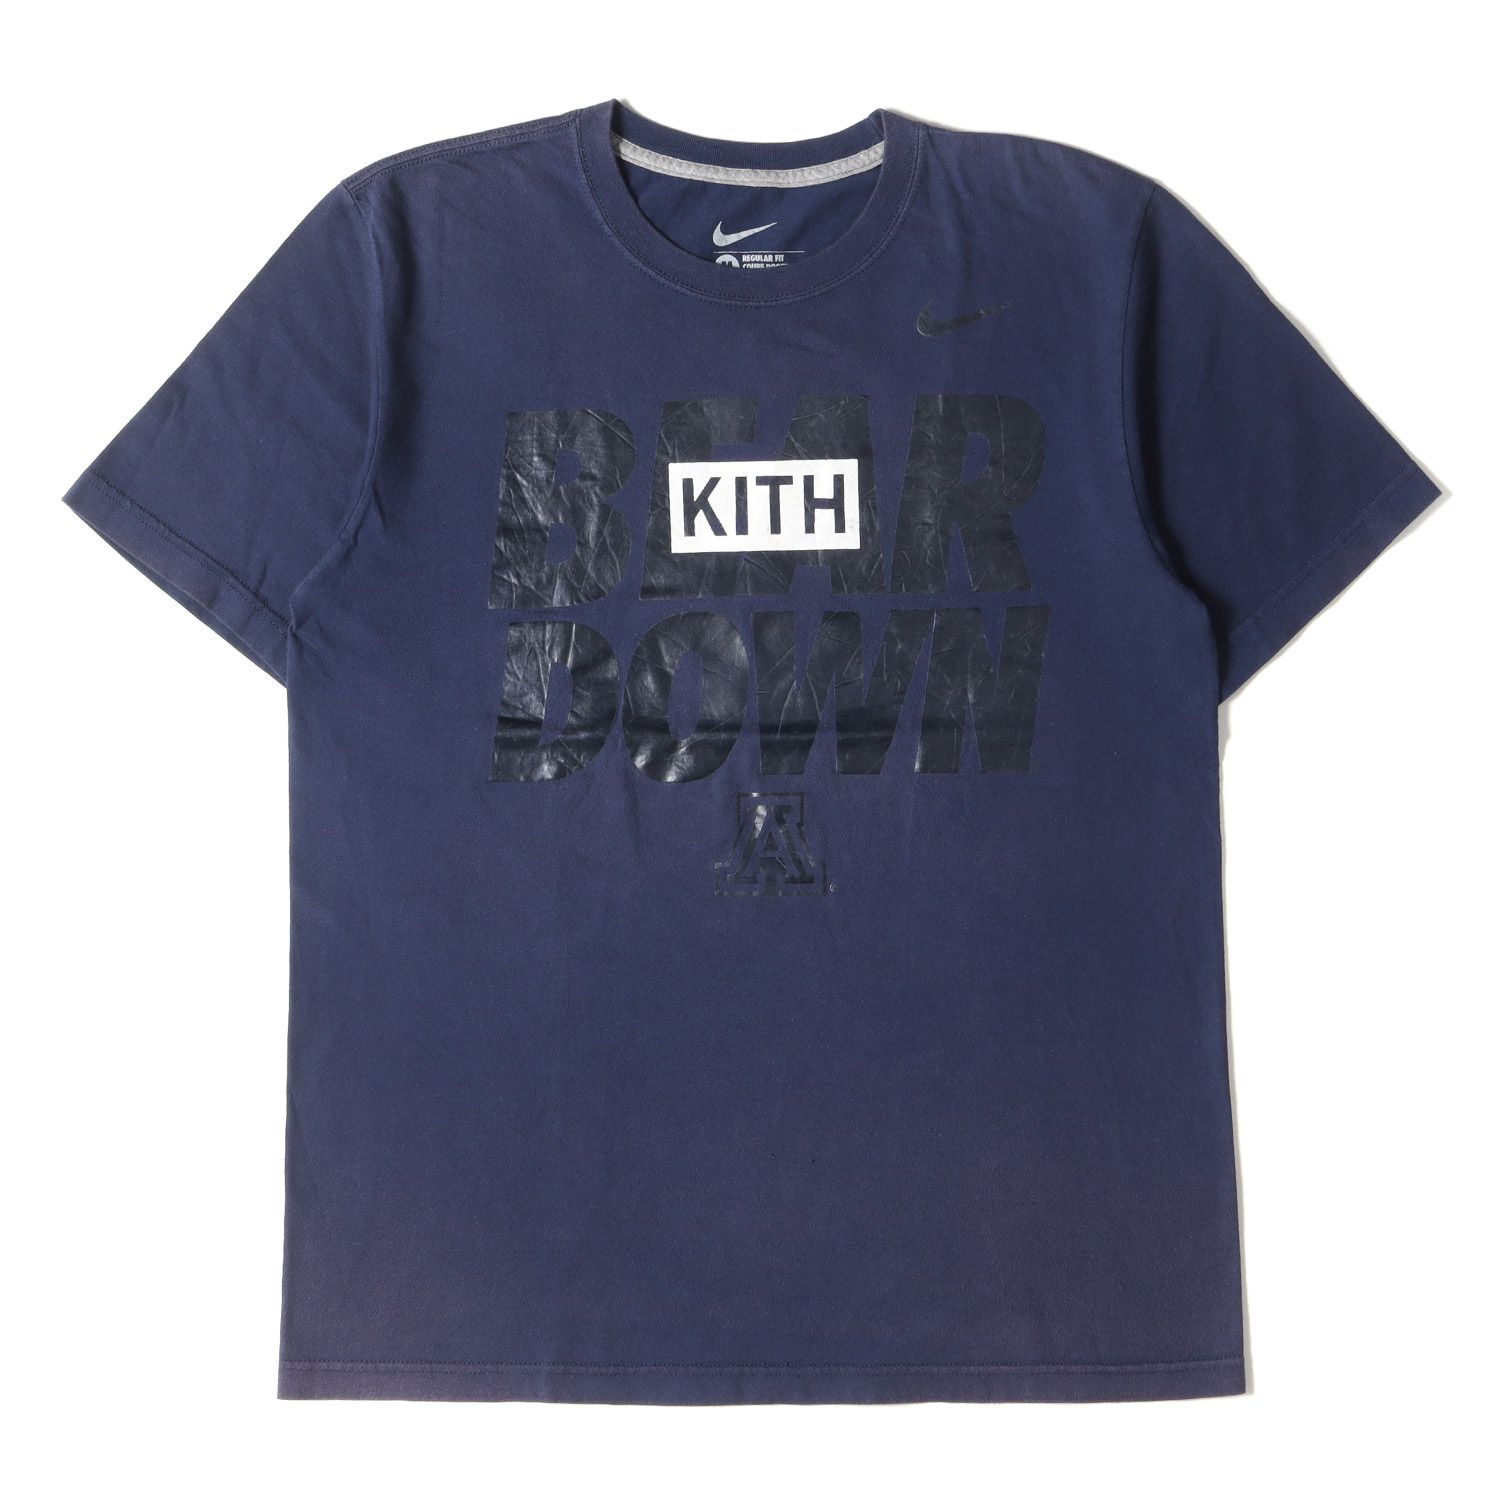 Kith Treats Tokyo Treats Sakura Tシャツ宜しくお願いいたします